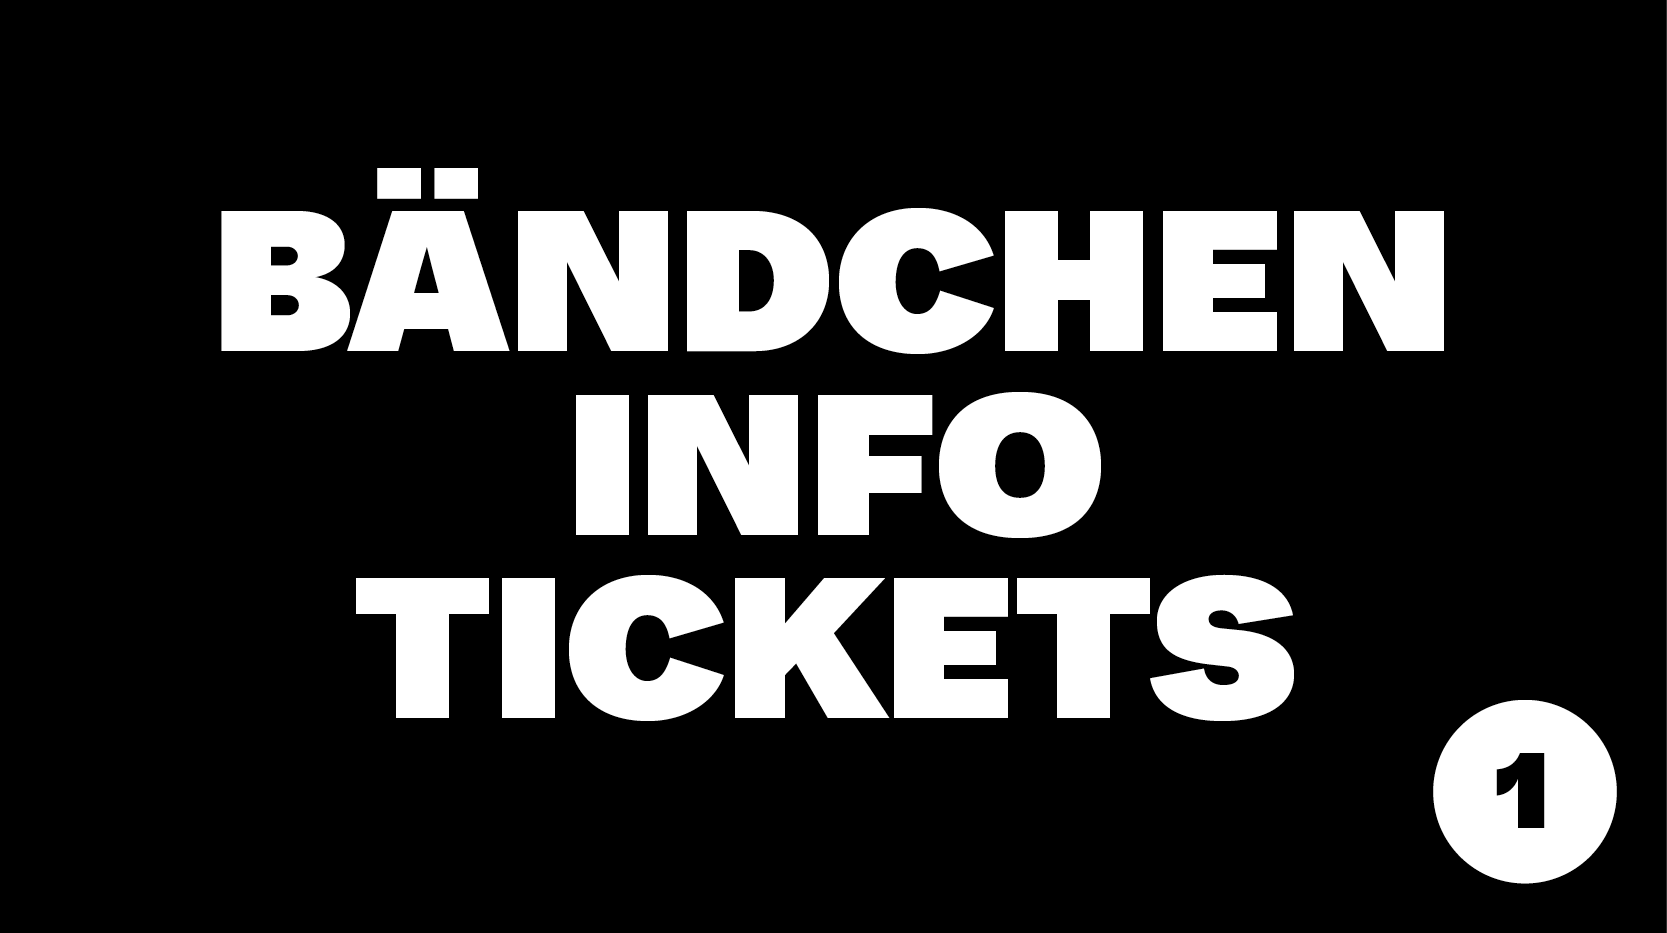 Info, Tickets & Bändchen